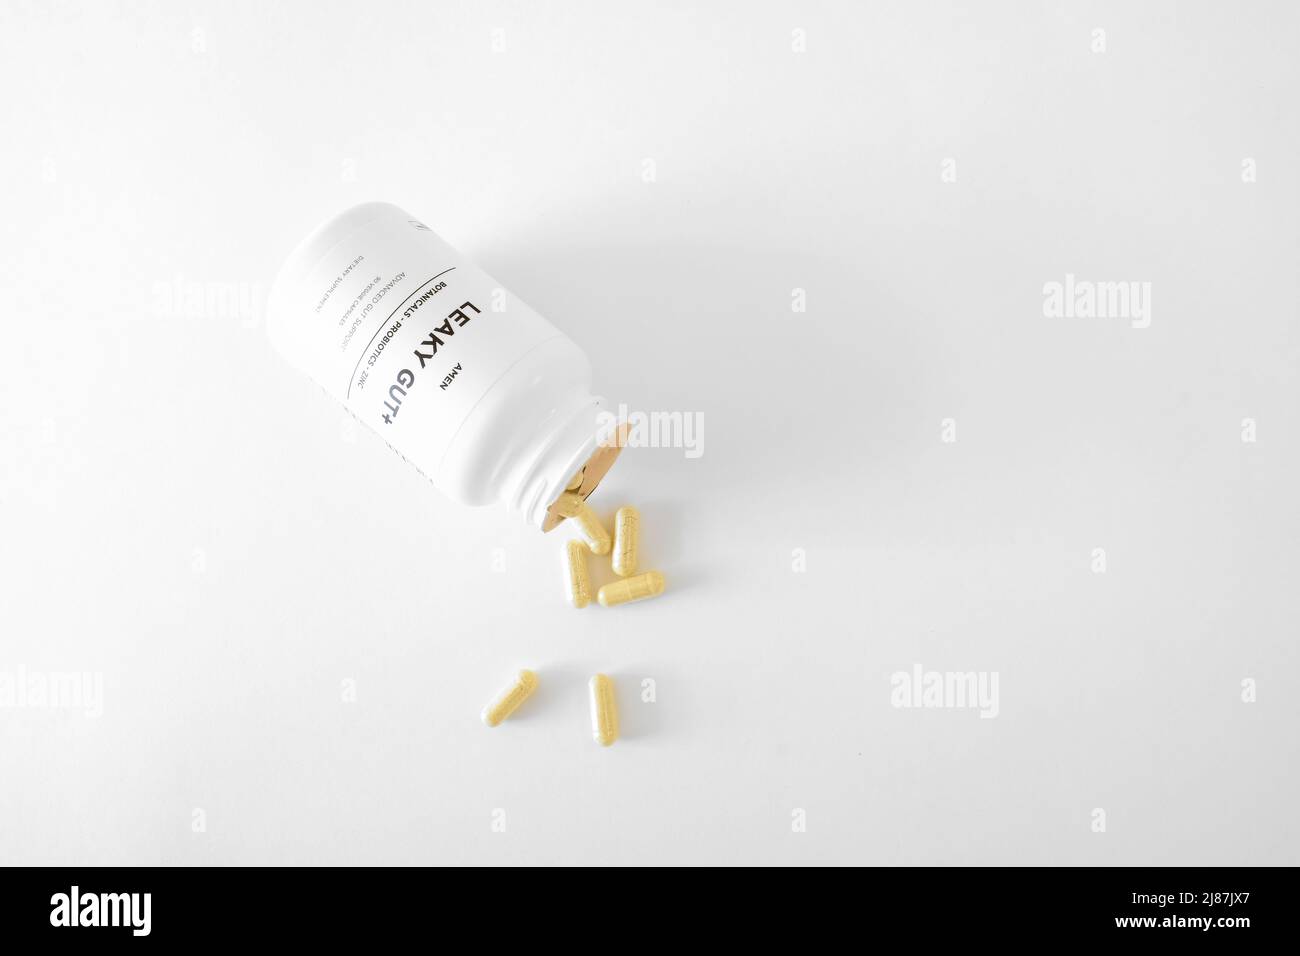 Bouteille de la marque Amen Filly Gut + pilules; un tout-en-un complément digestif à base de plantes et un mélange botanique utilisé pour les maux digestifs et d'estomac. Banque D'Images